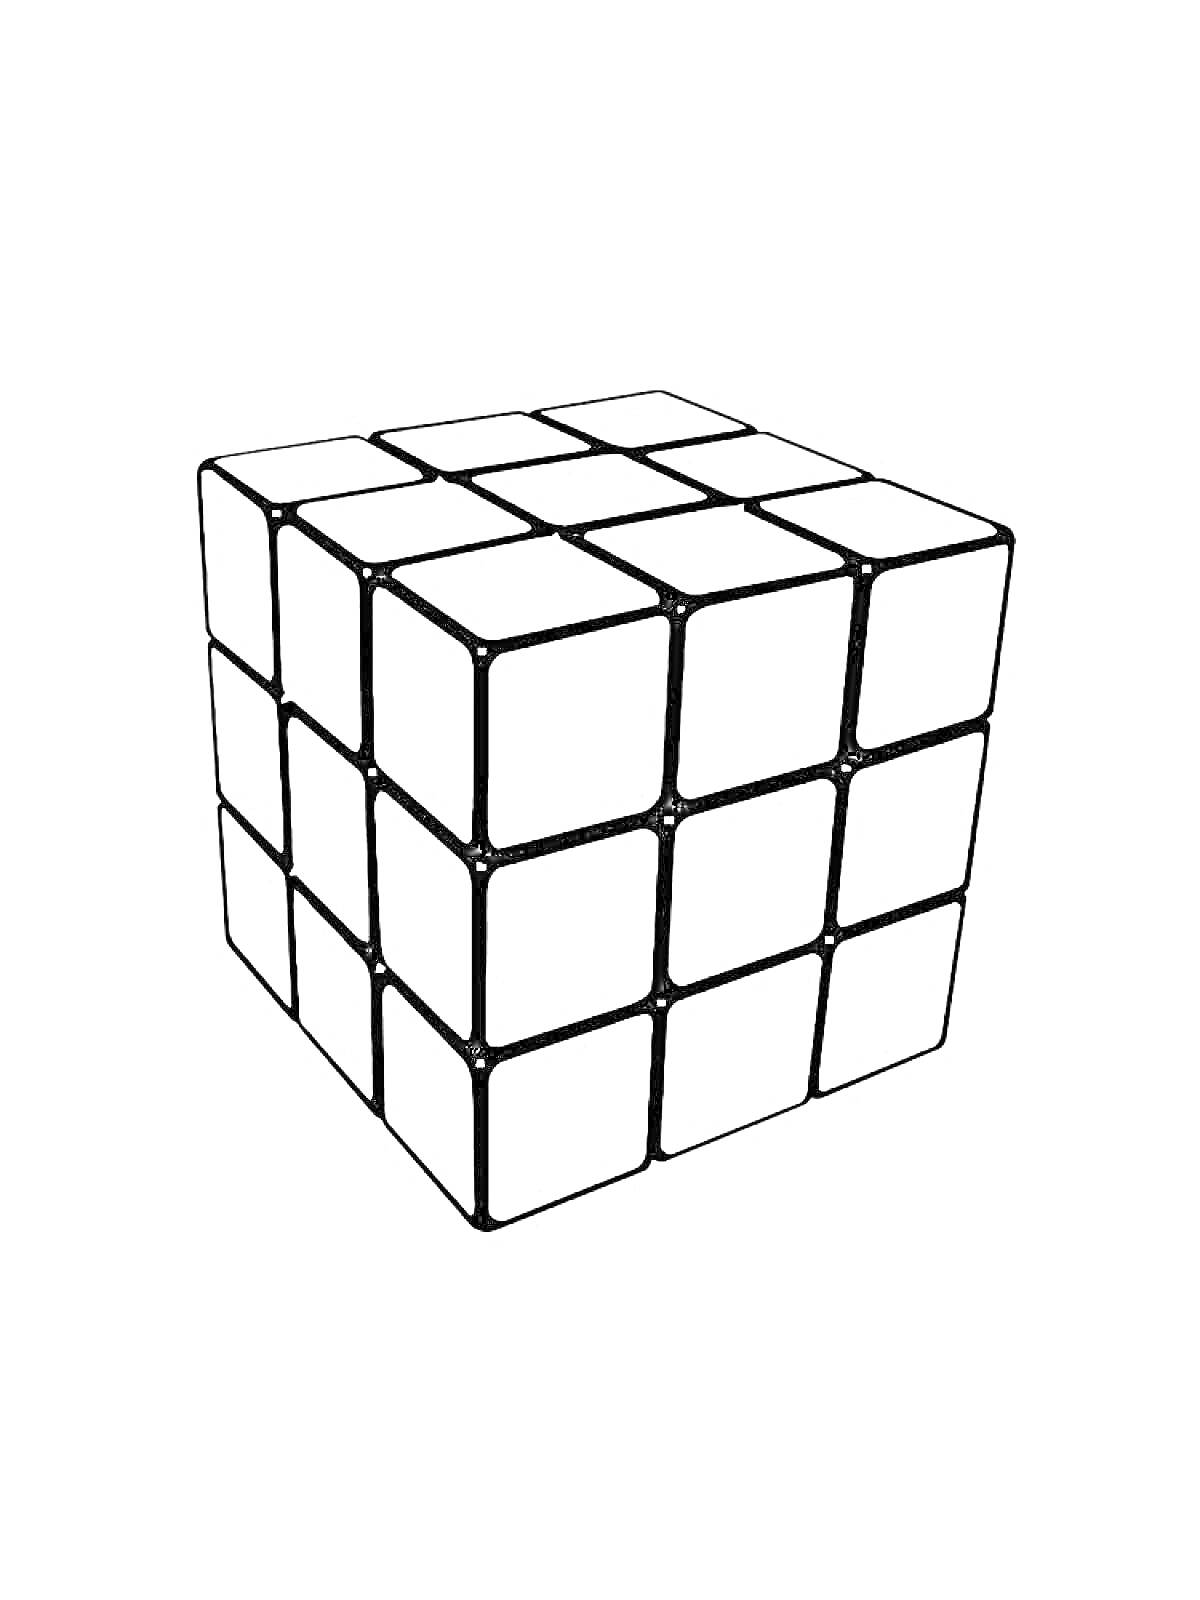 Раскраска Кубик Рубика с пустыми ячейками для раскрашивания